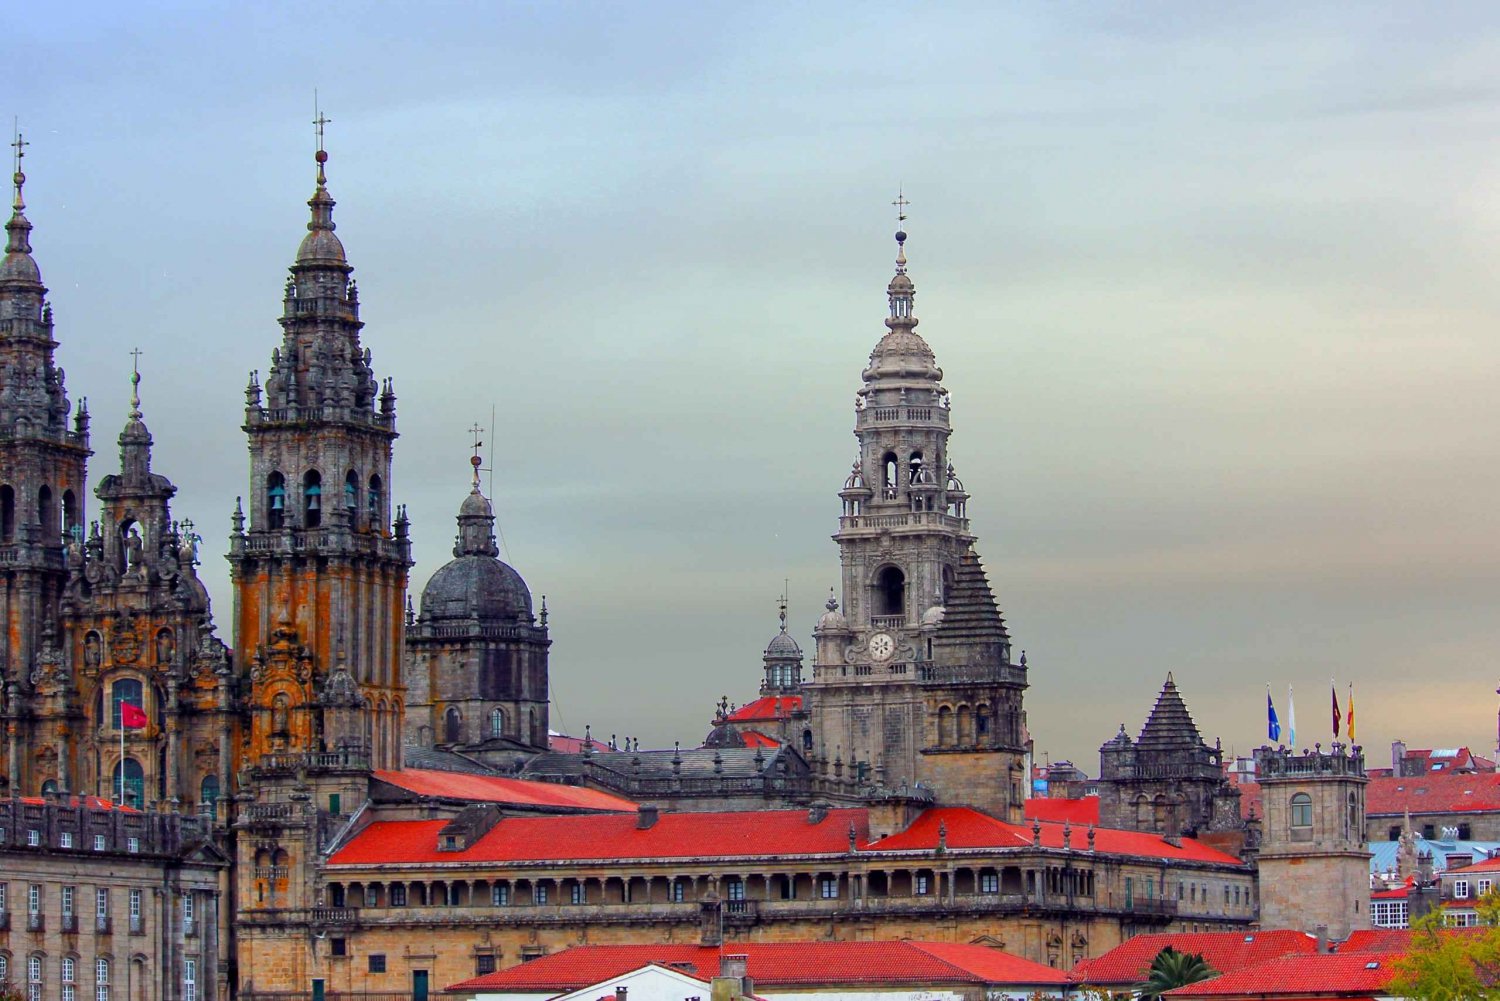 Santiago de Compostela: Old Town Private Tour